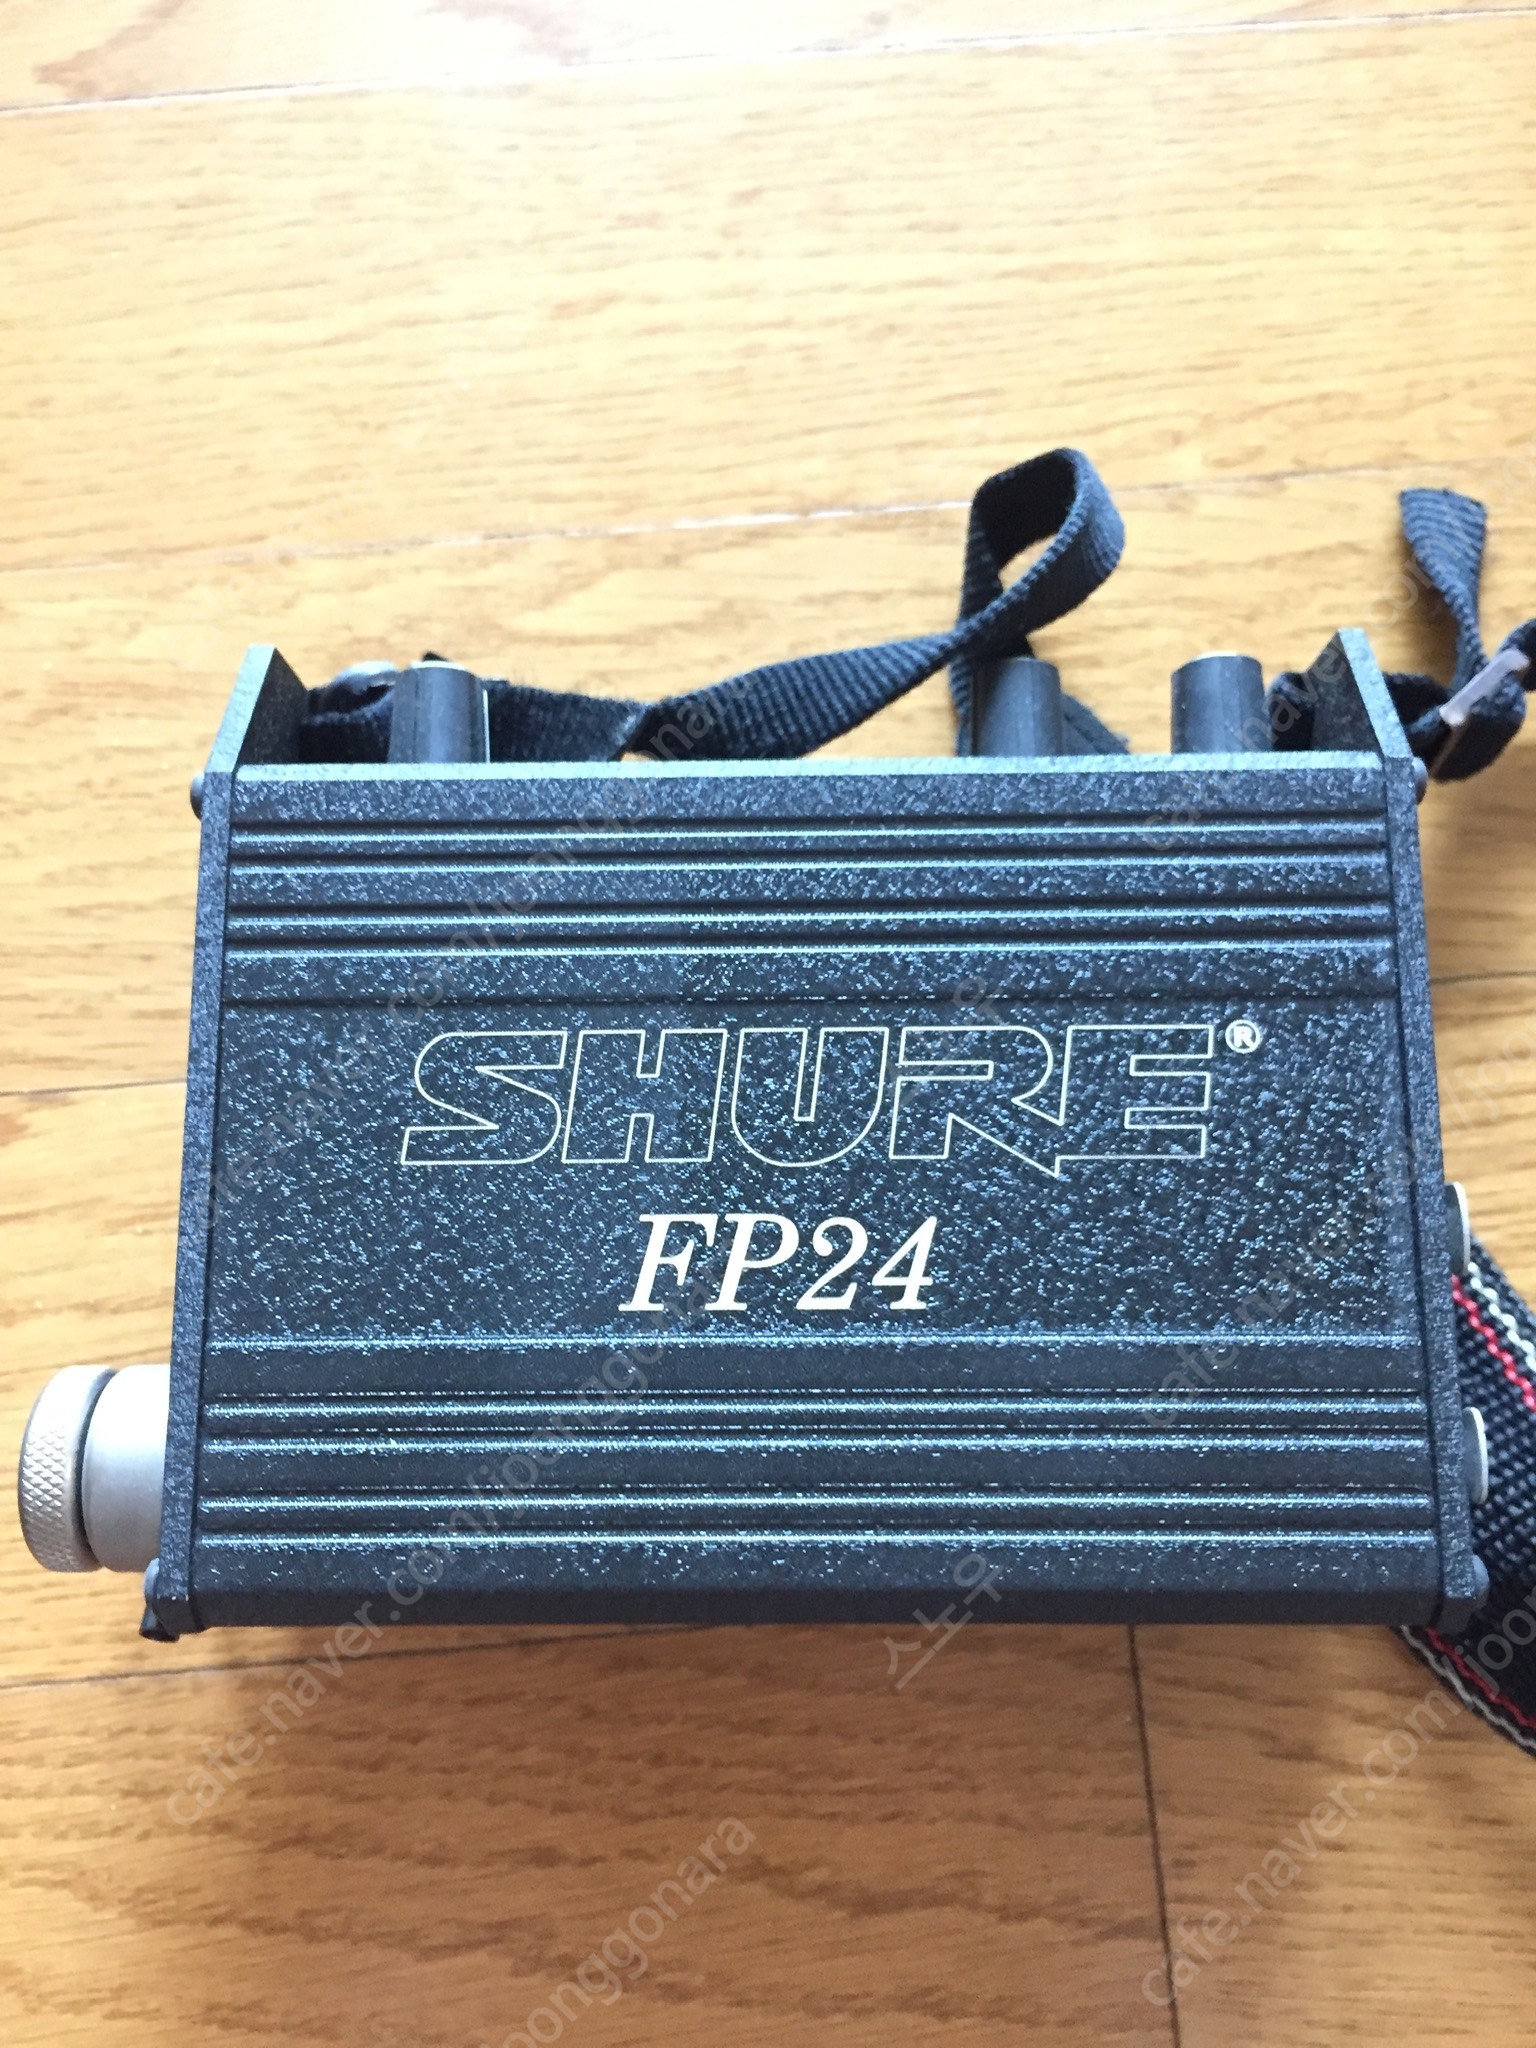 슈어 Shure FP24 프리앰프/믹서, 영화촬영 녹음장비